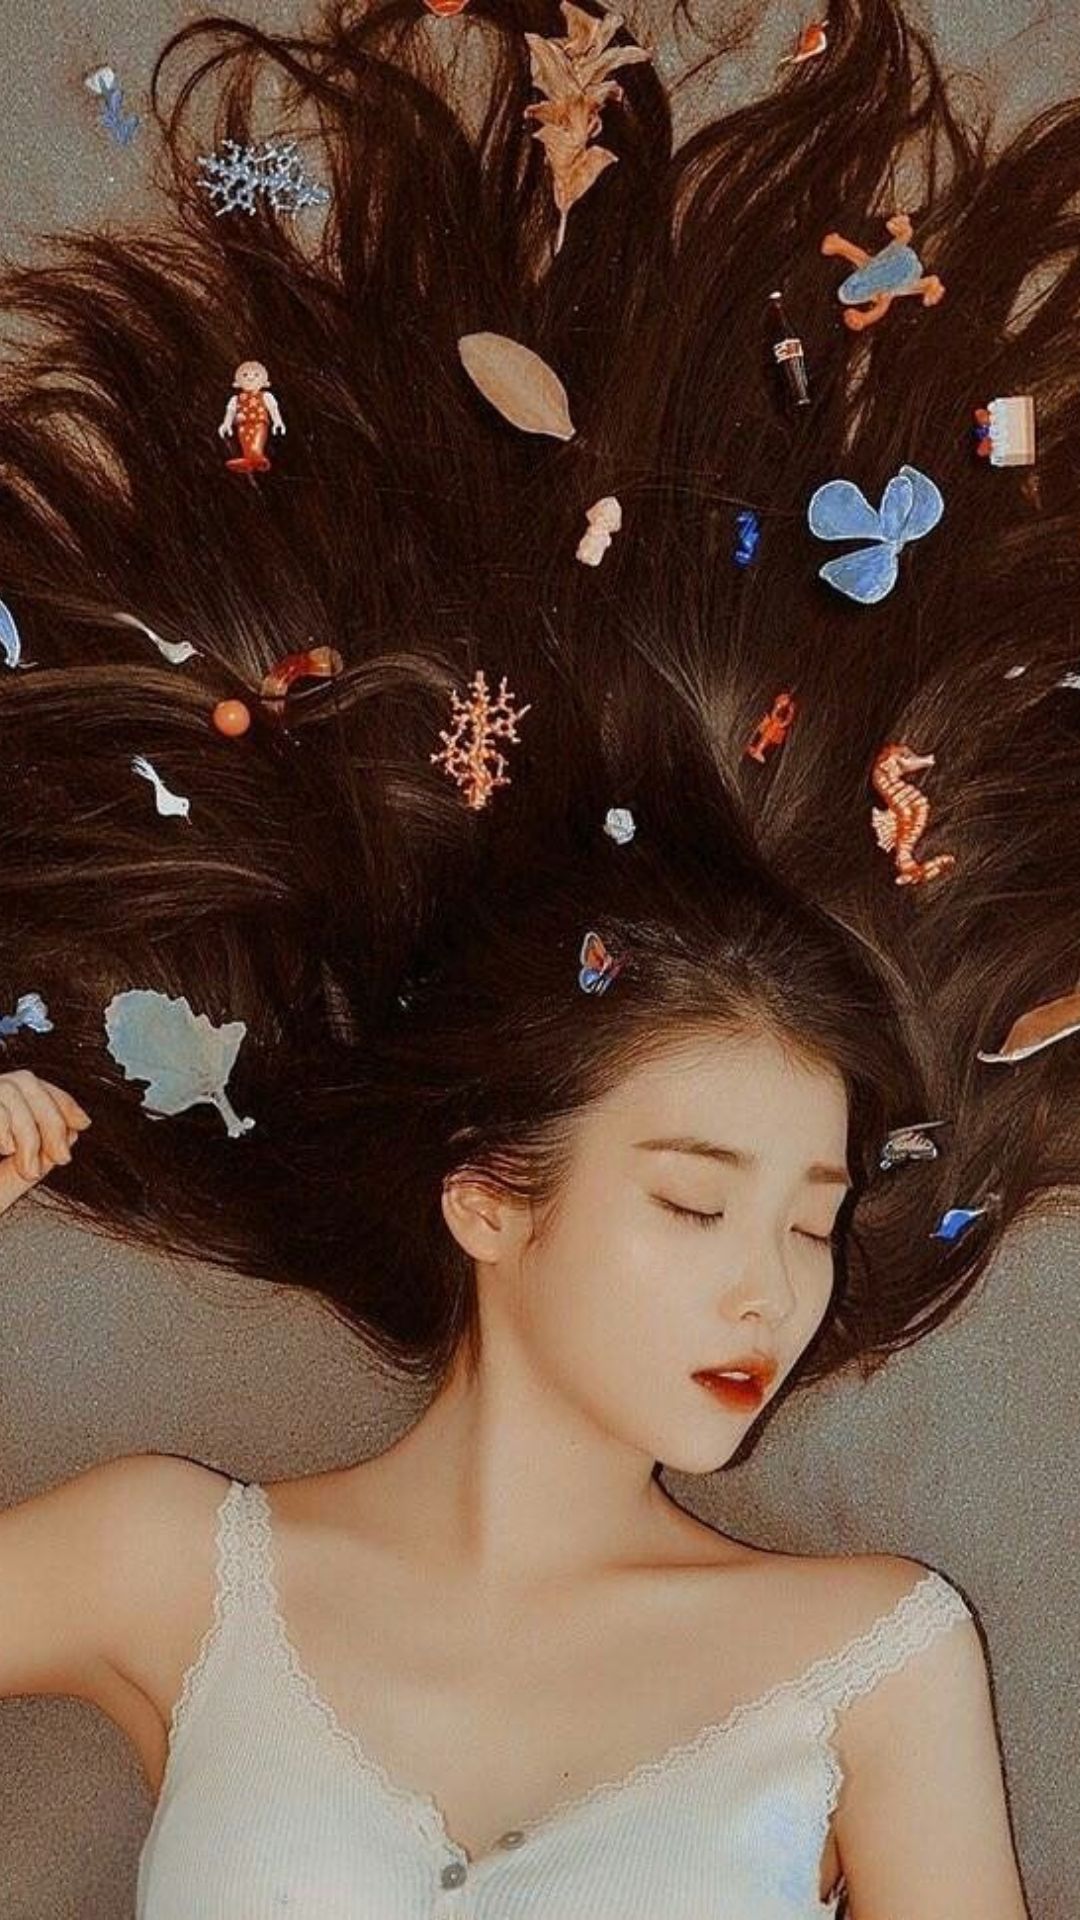 Lee Ji Eun Photoshoot Wallpapers